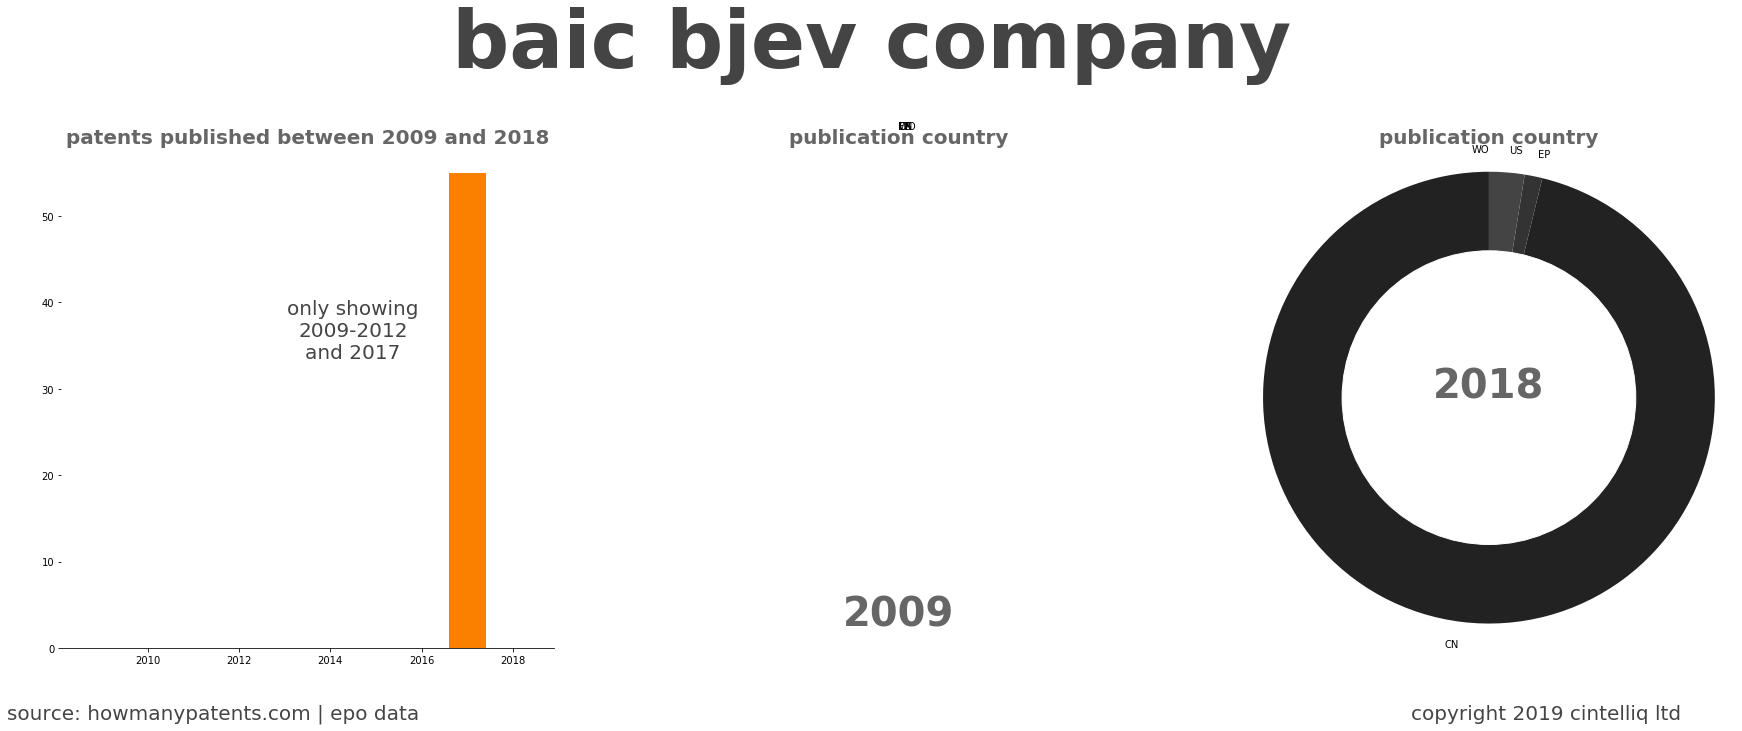 summary of patents for Baic Bjev Company